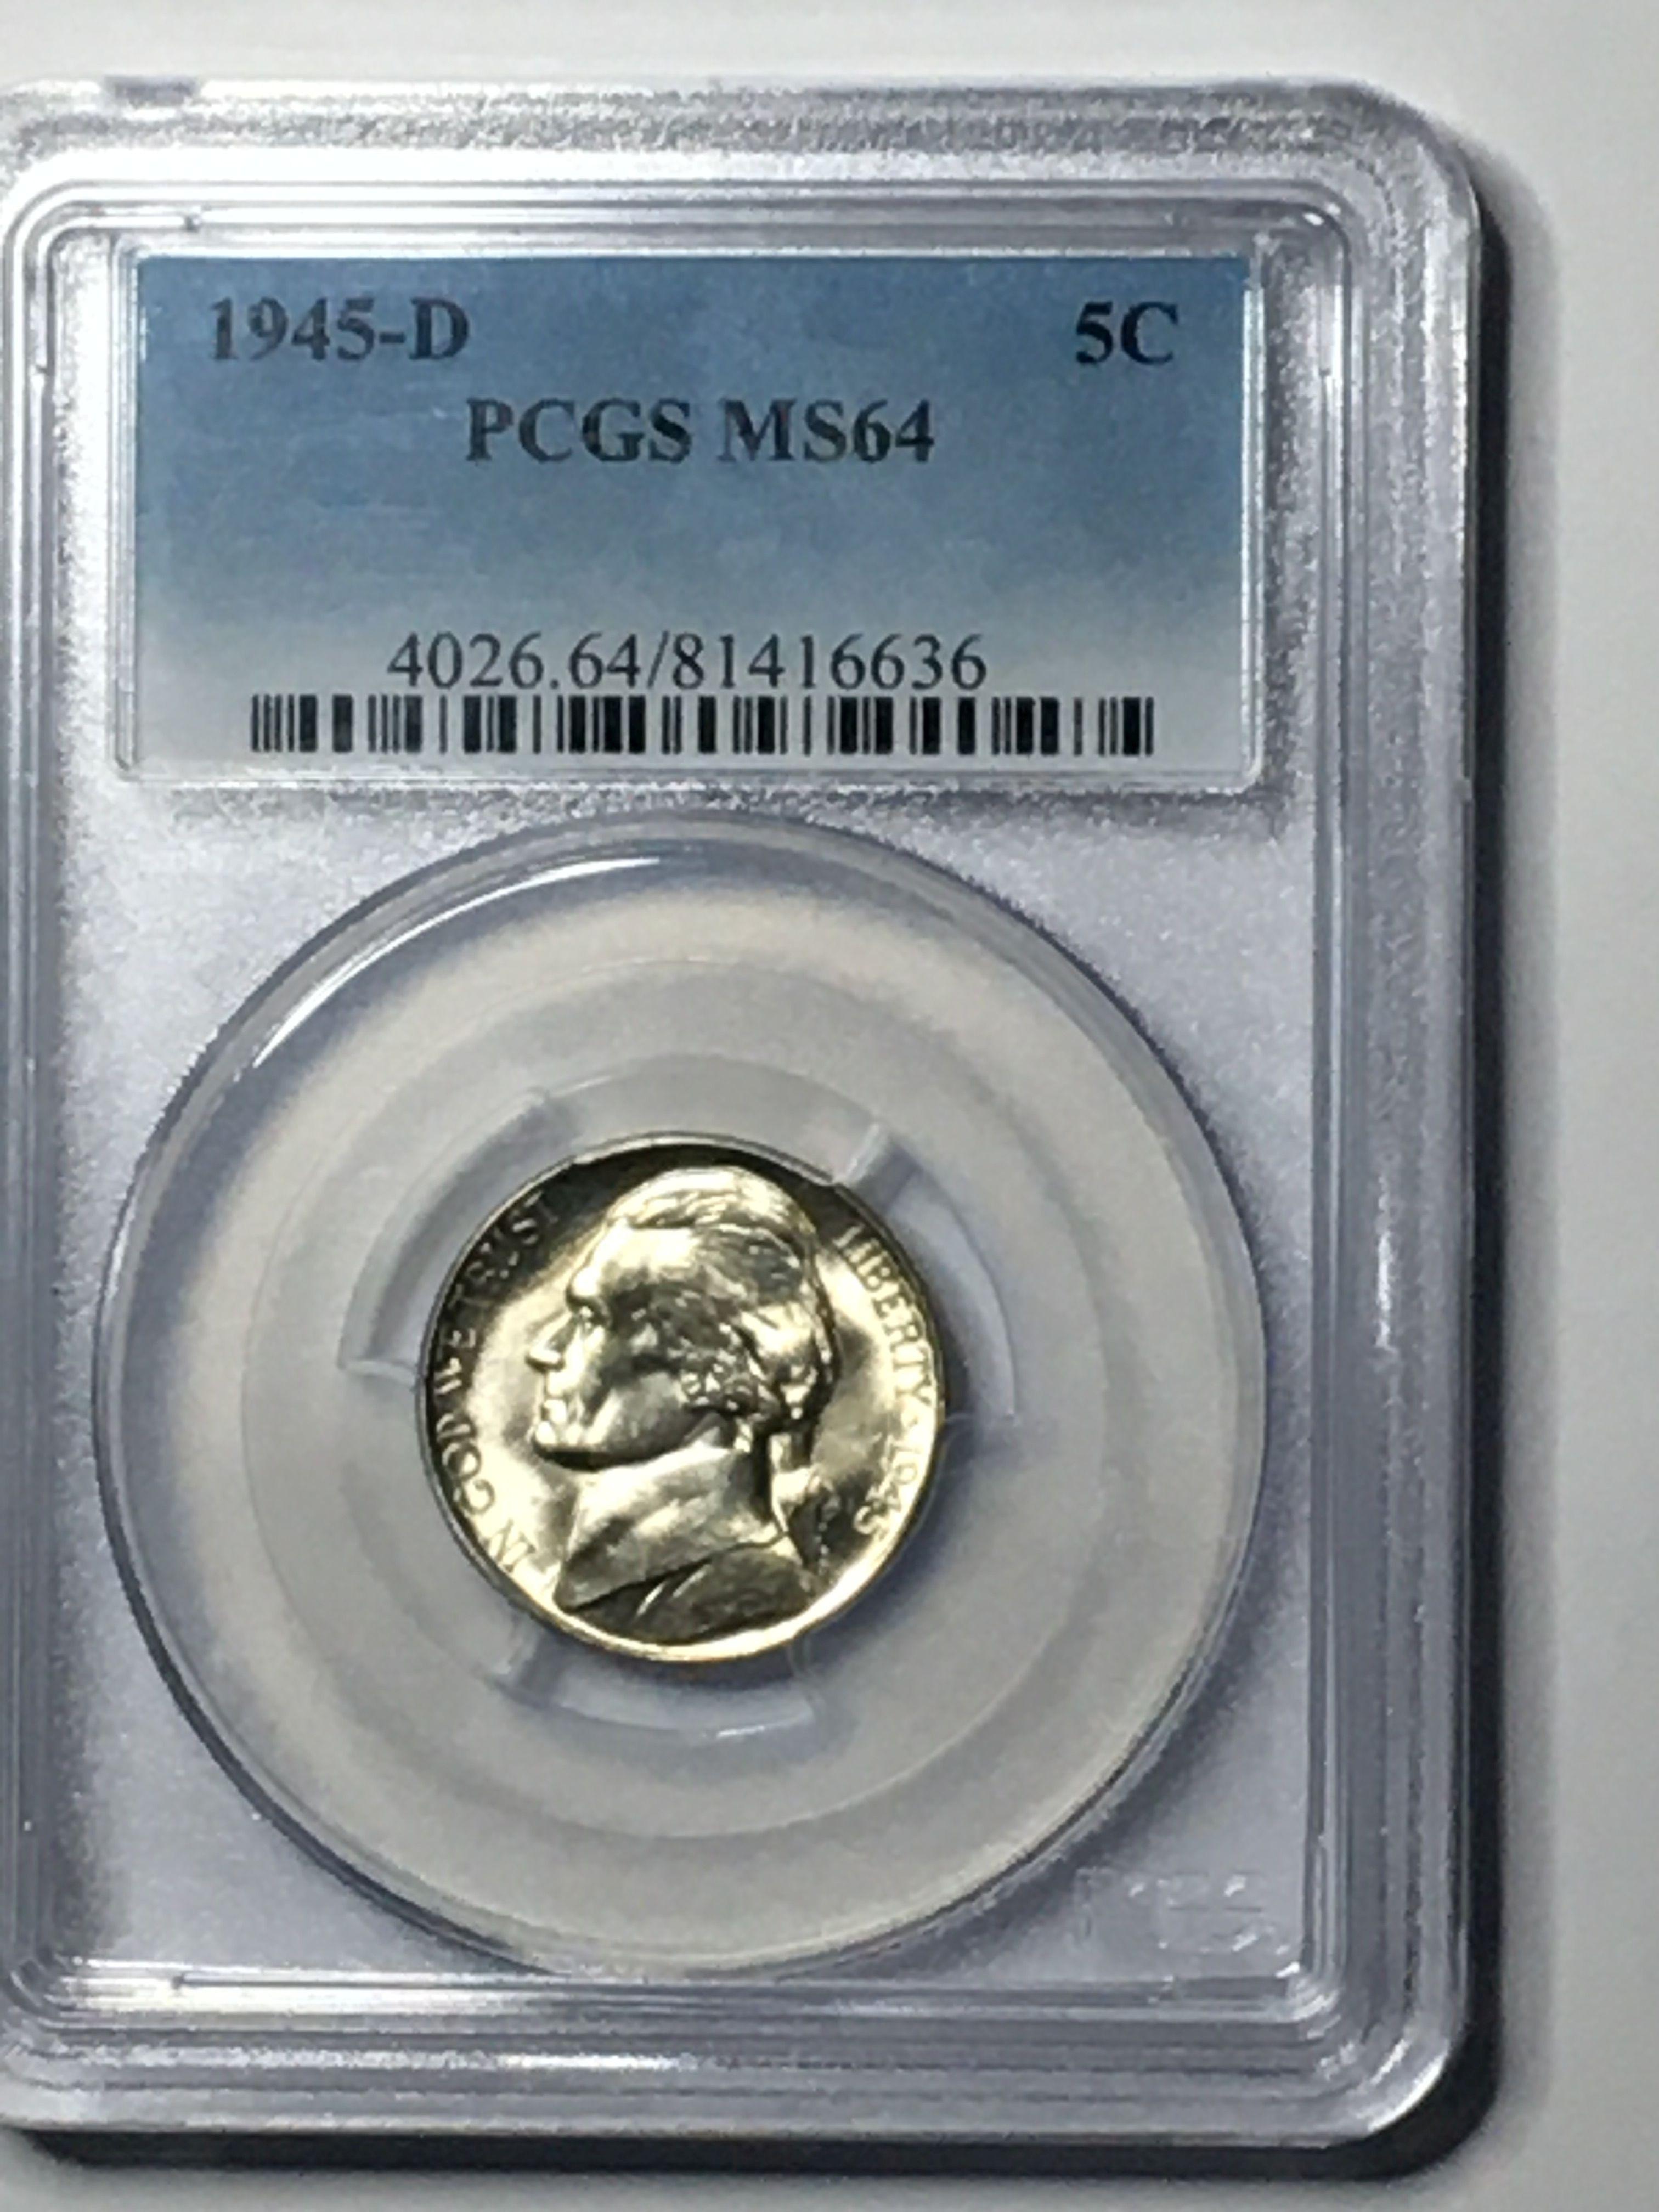 Jefferson Silver War Nickel Looks Better 1945 D